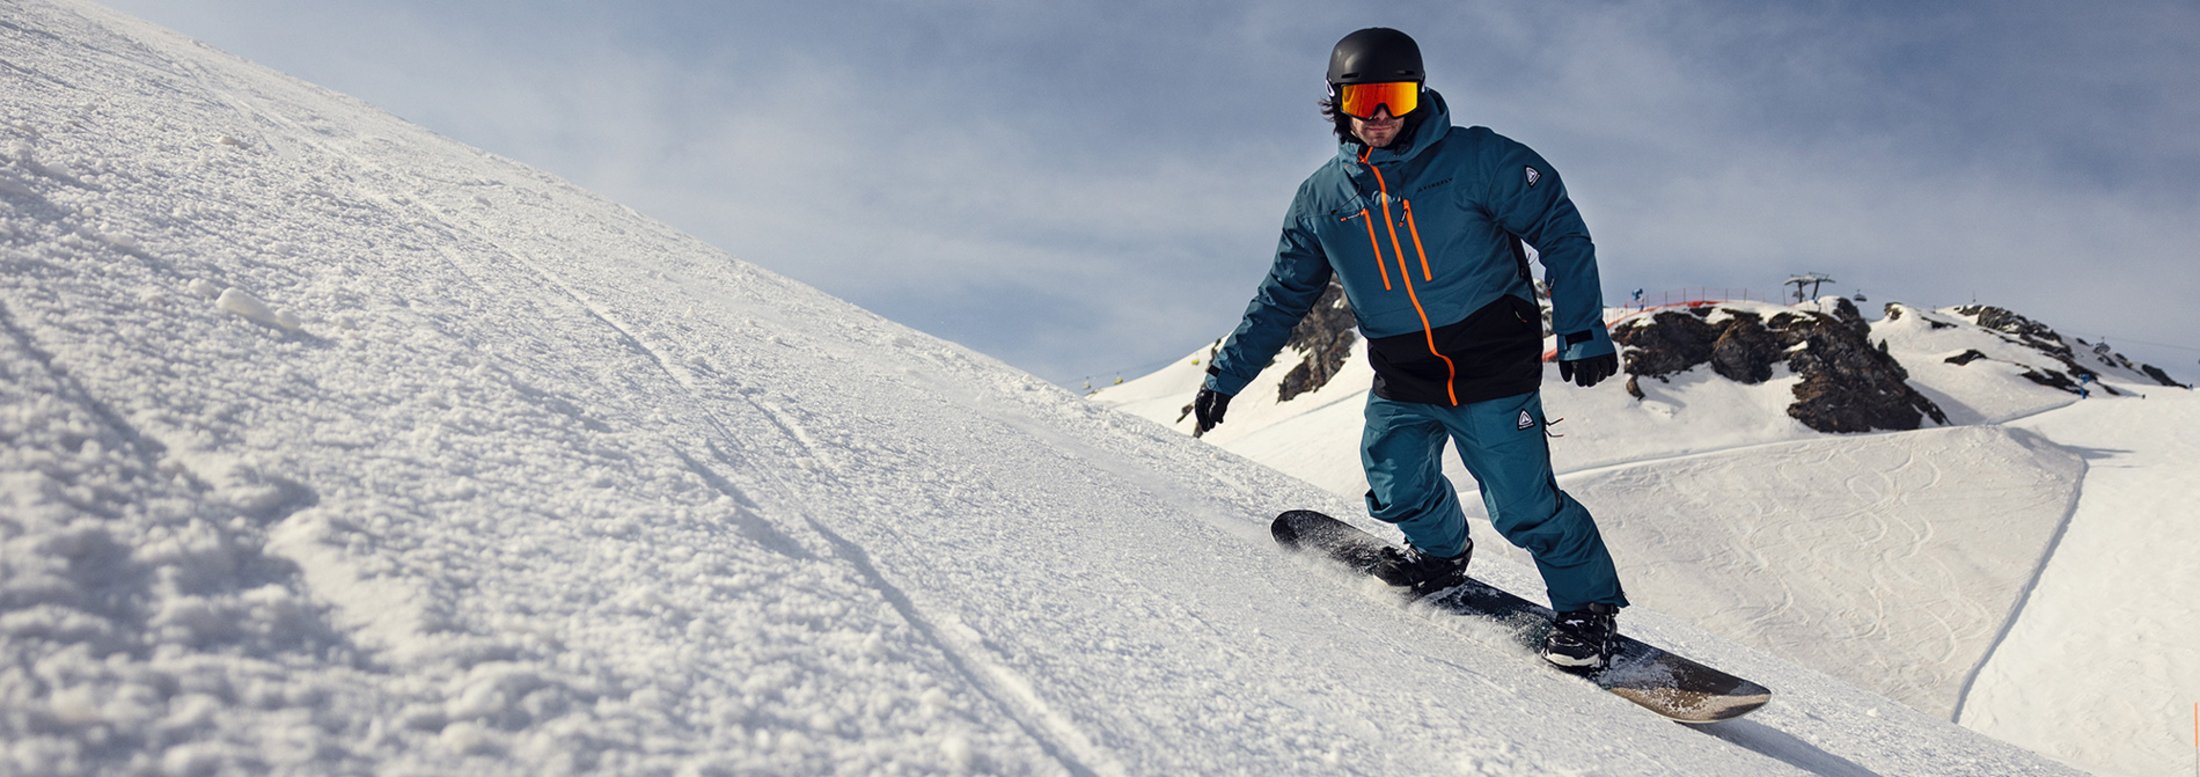 Wintersport_Snowboard_Schnee_Winter_Intersport_Winninger